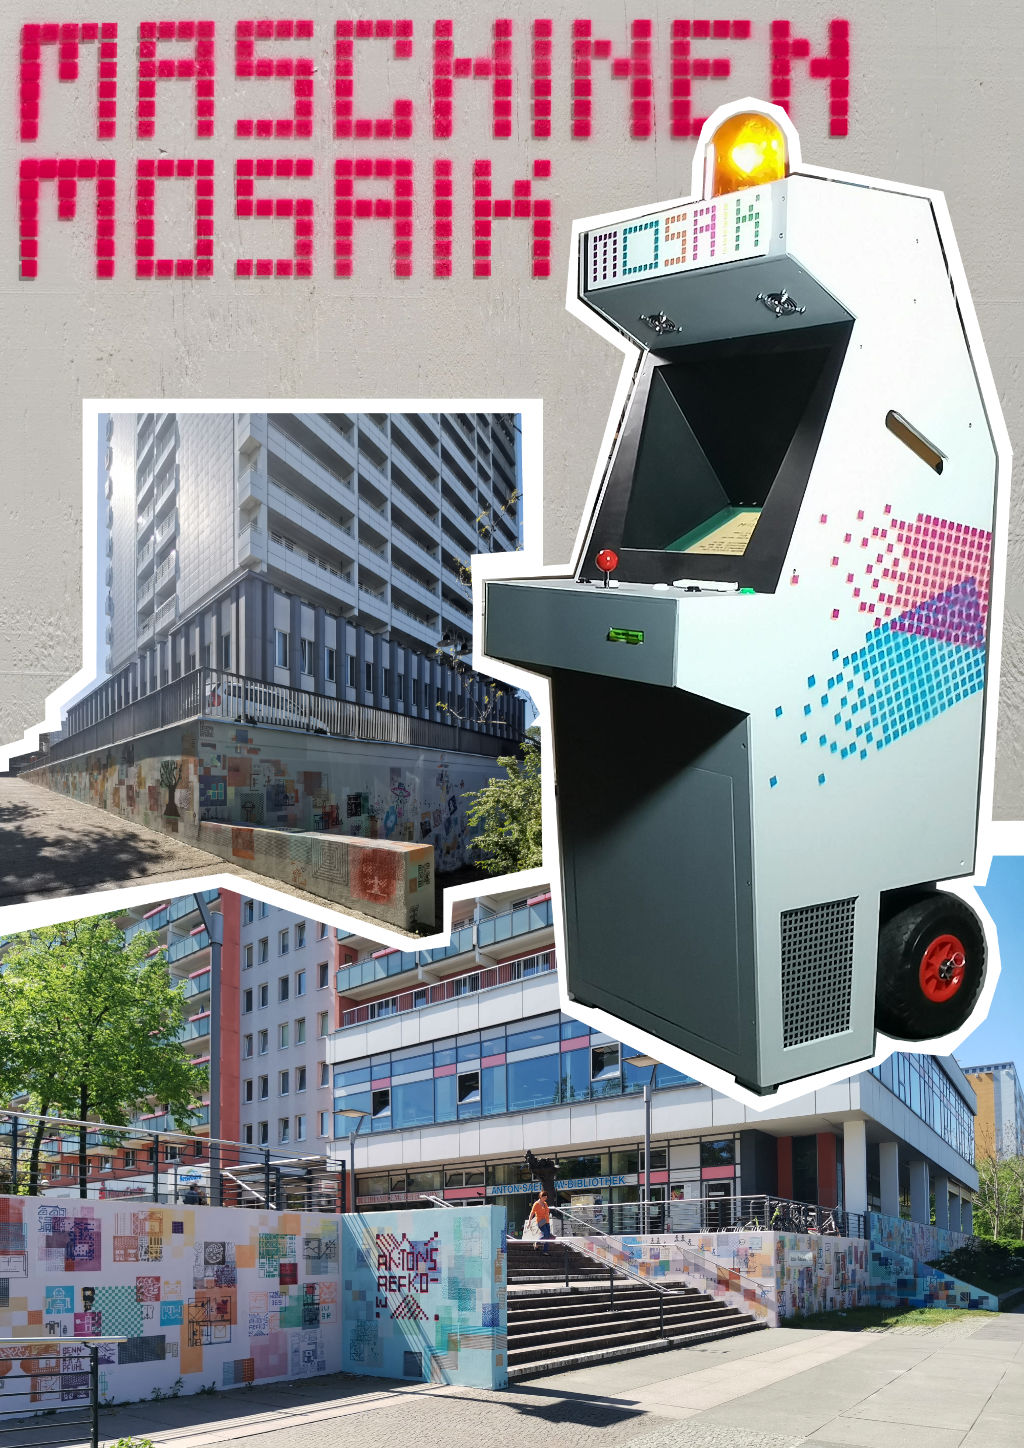 Im Vordergrund ist die Mosaikmaschine zu sehen.
        Sie ist eine Arcade-Machine mit Joystick.
        Mit ihr kann man Mosaike malen.
        Im Hintergrund ist der Anton-Saefkow Platz zu sehen.
        Die Wände sind mit den Mosaiken geschmückt.